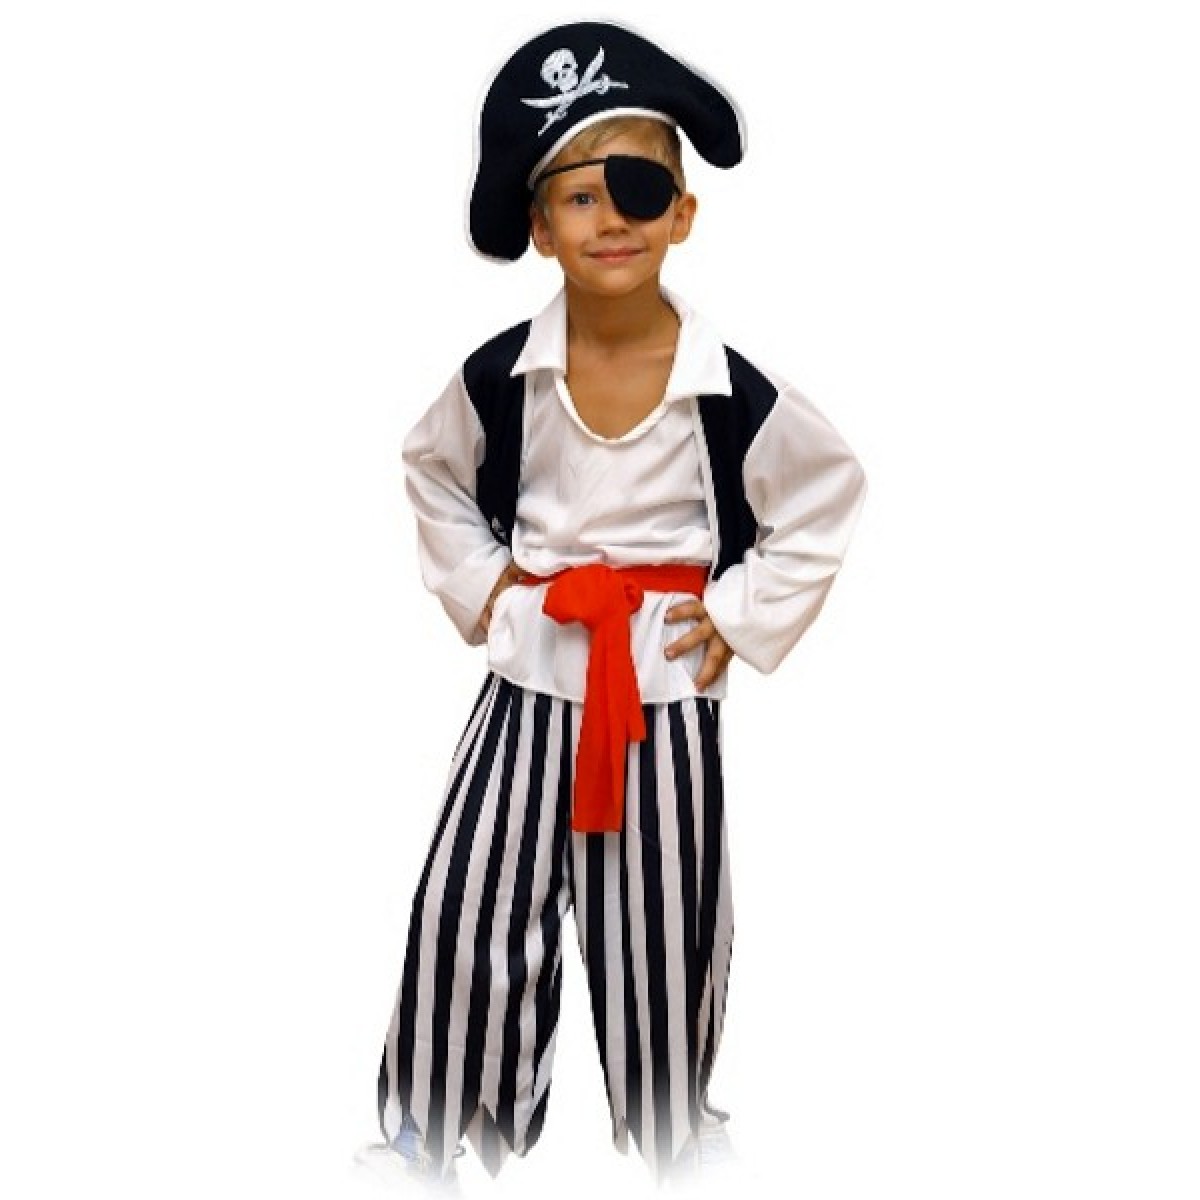 Купить костюм пирата для мальчика в интернет-магазине : описание, отзывы, доставка по РФ р